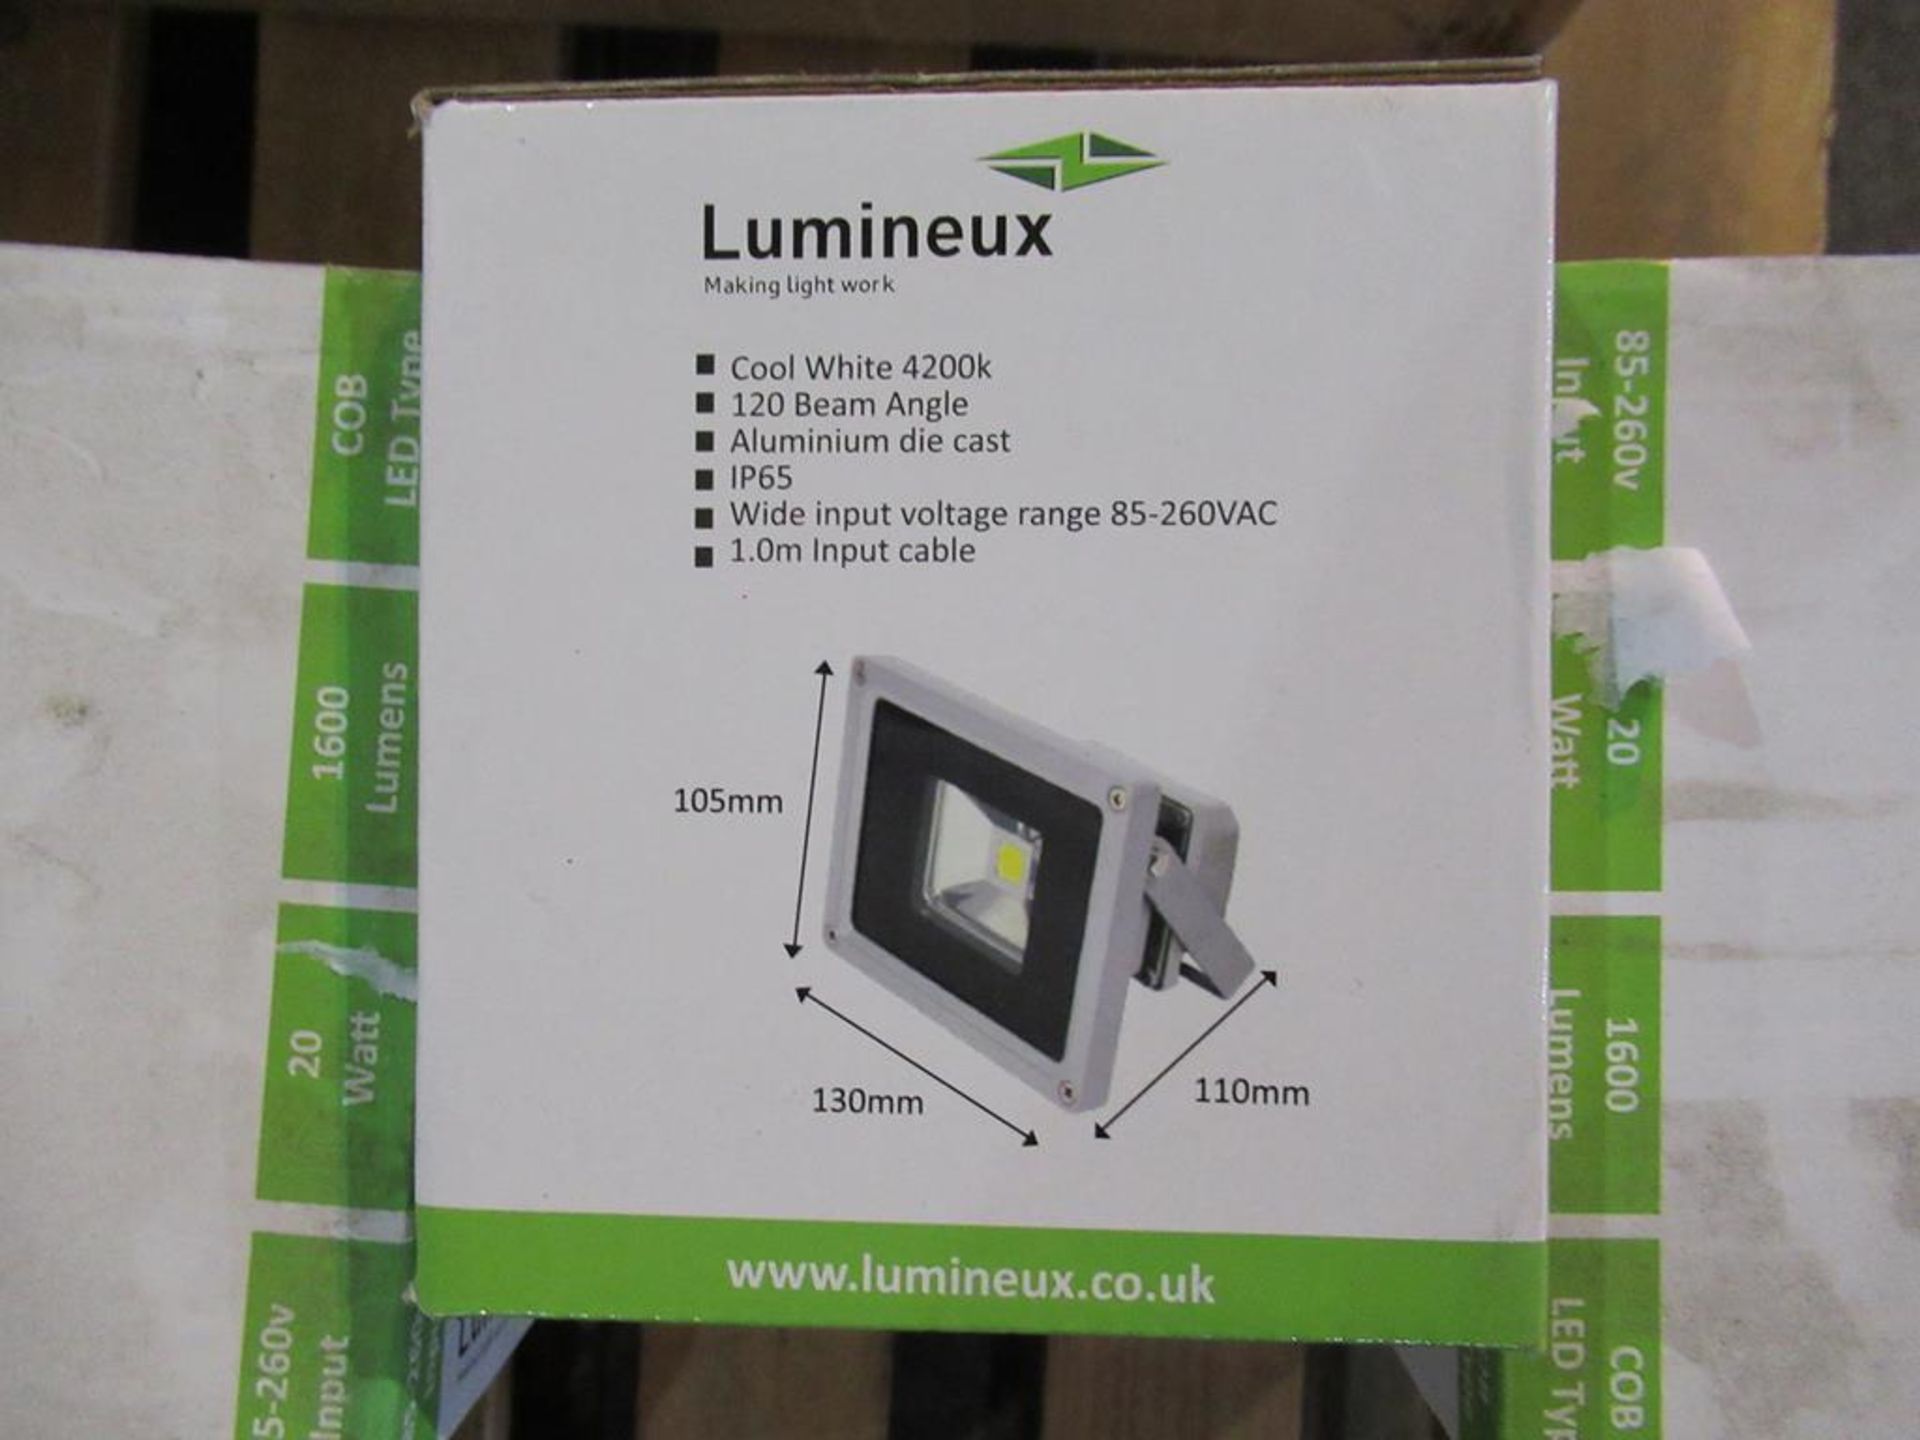 10 x Lumineux 20W LED Floodlight 85-265V Grey OEM Trade Price £ 170 - Image 2 of 2